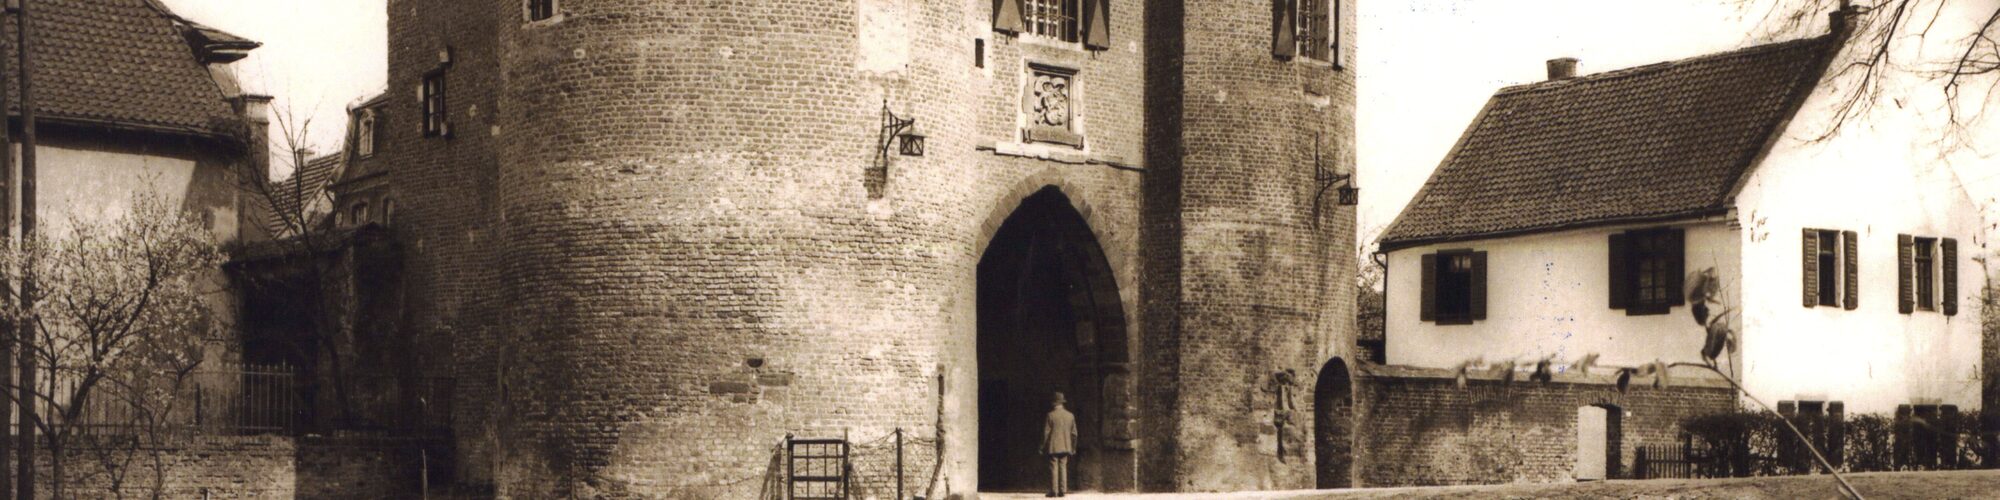 Historisches Bild vom Aachener Tor in Bergheim, sepia